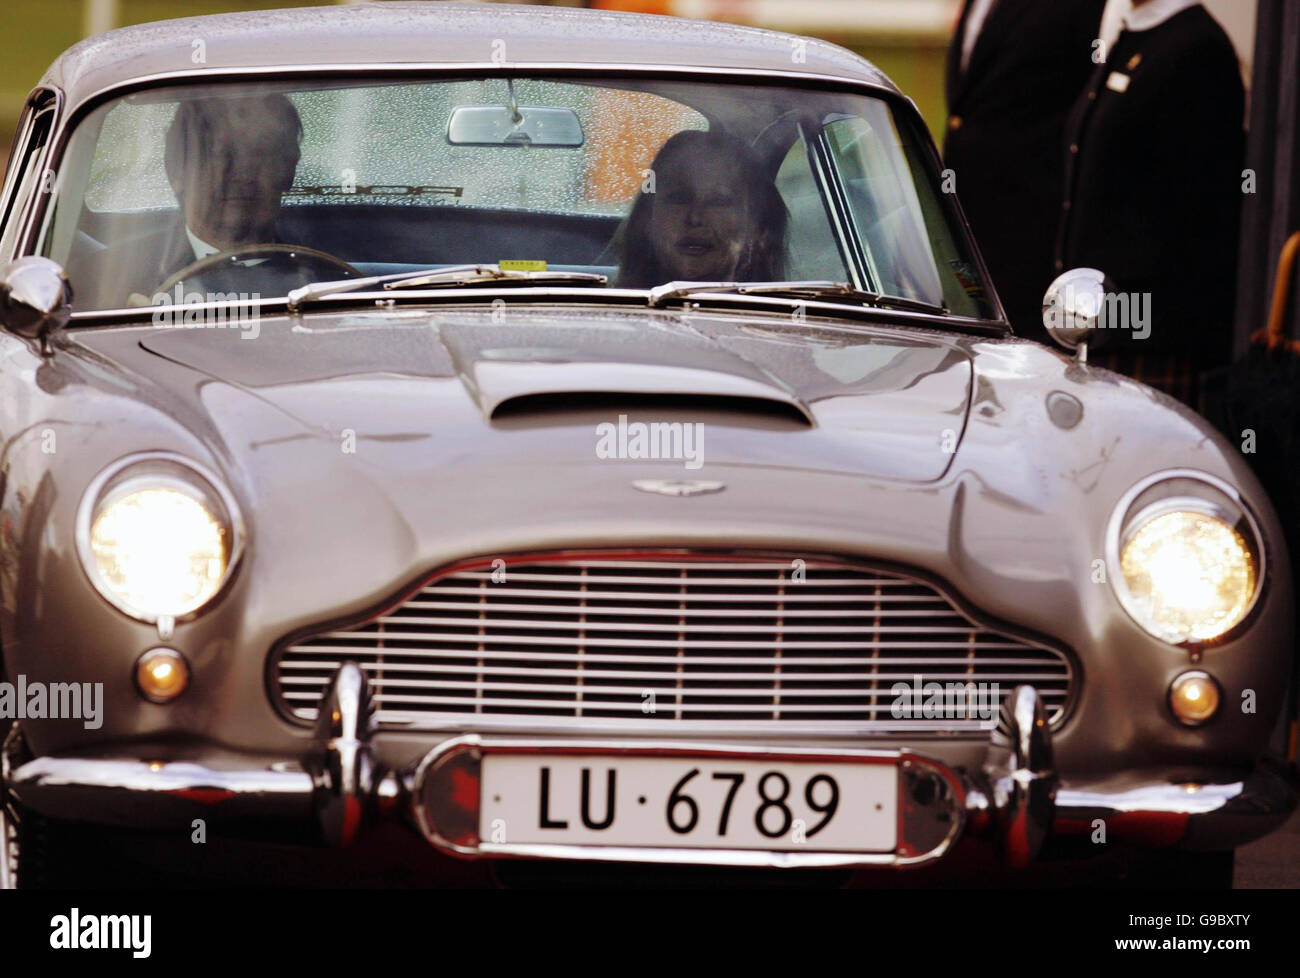 Ursula Andress llega en el original James Bond Aston Martin DB5 de 'Goldfinger' en el Royal Yacht en Edimburgo para celebrar su cumpleaños. La ocasión también Marca el opnening del Consulado